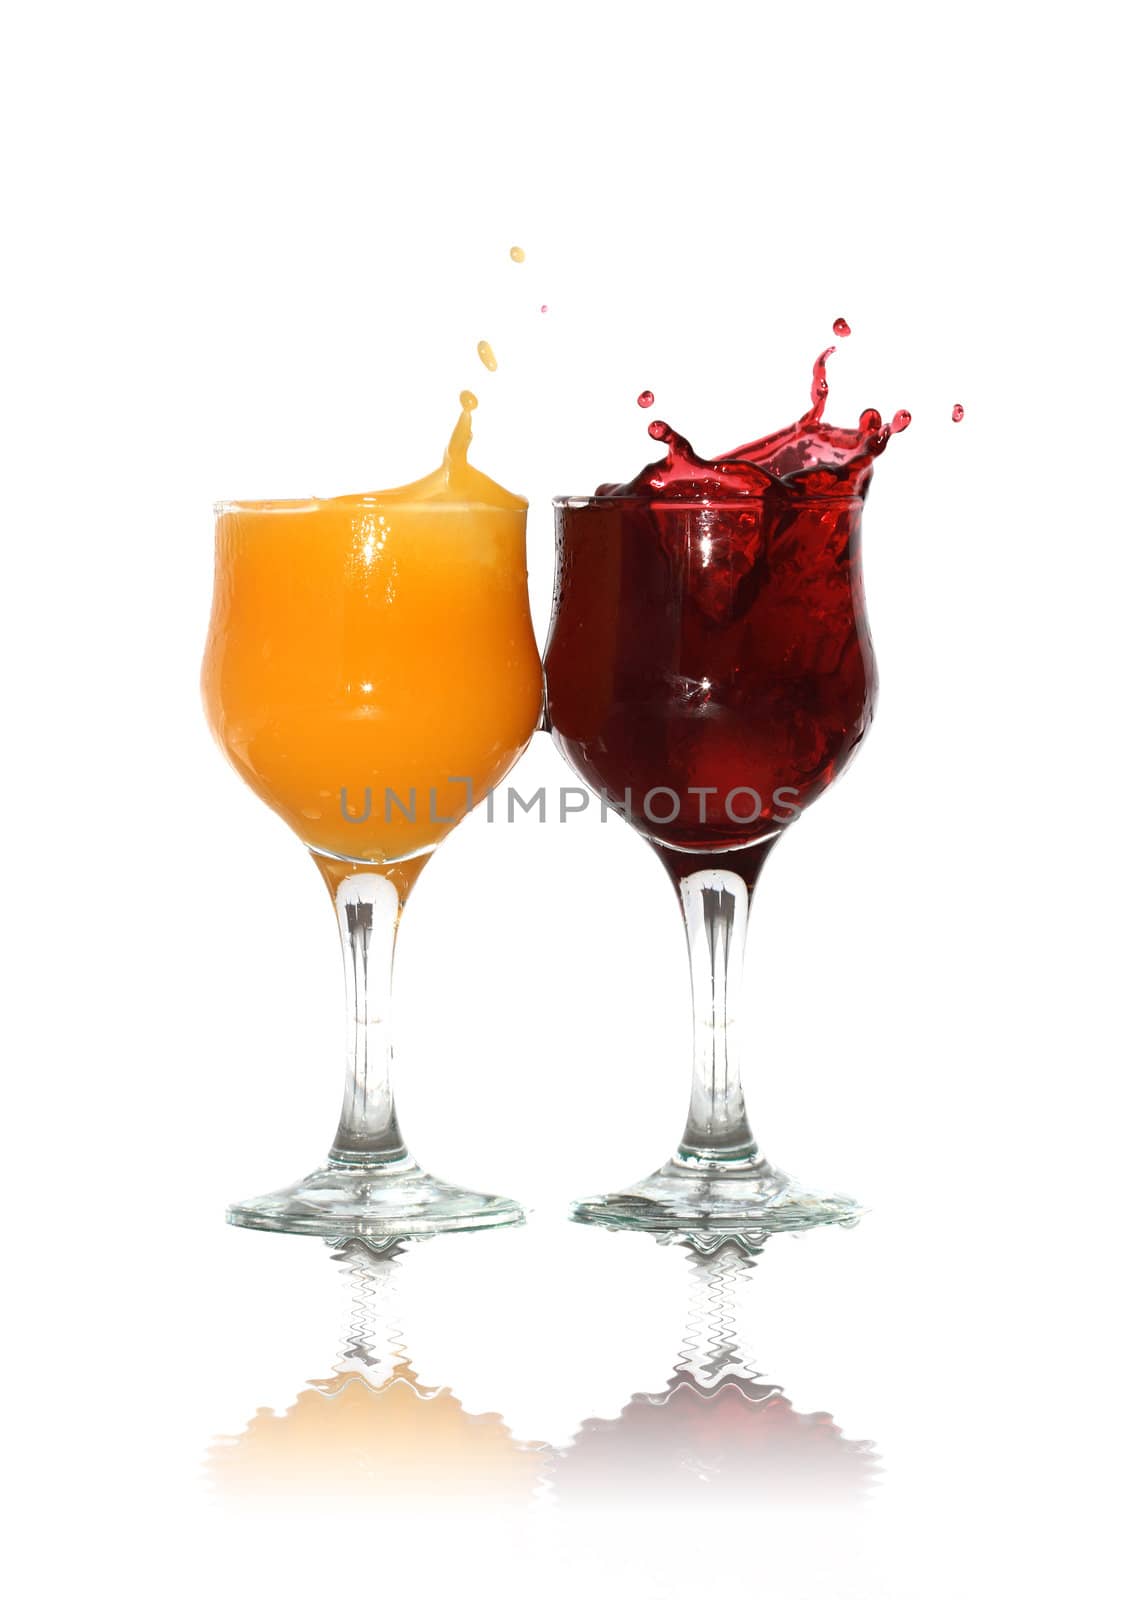 Juice And Juice by kvkirillov